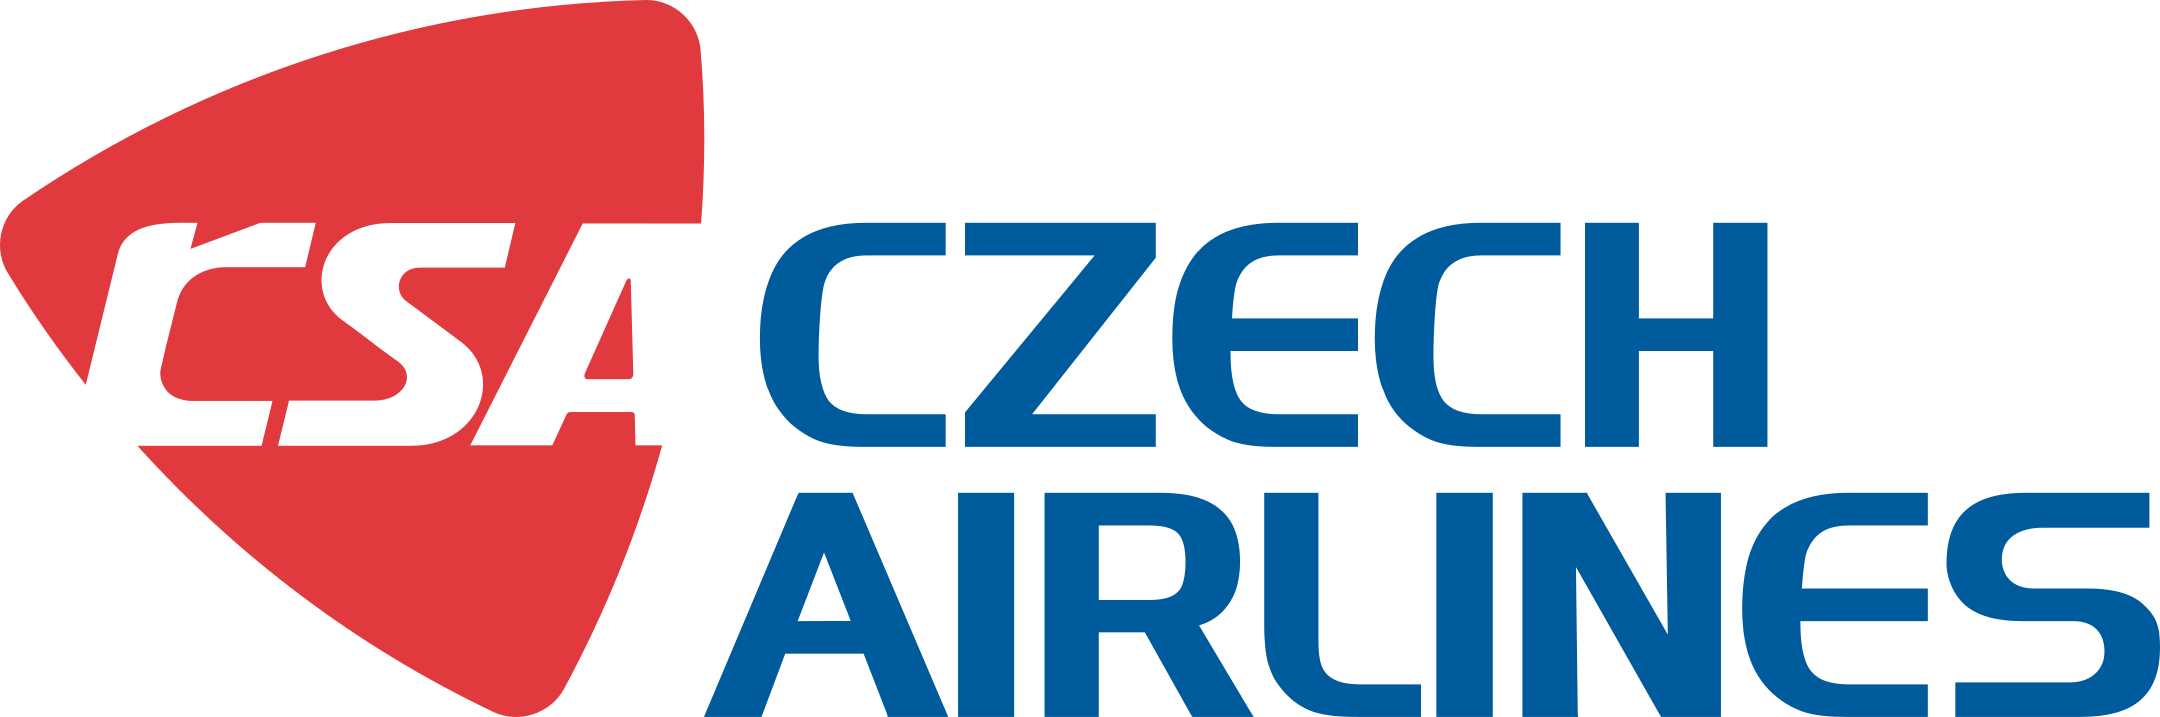 czech airlines logo 1 - Czech Airlines Logo